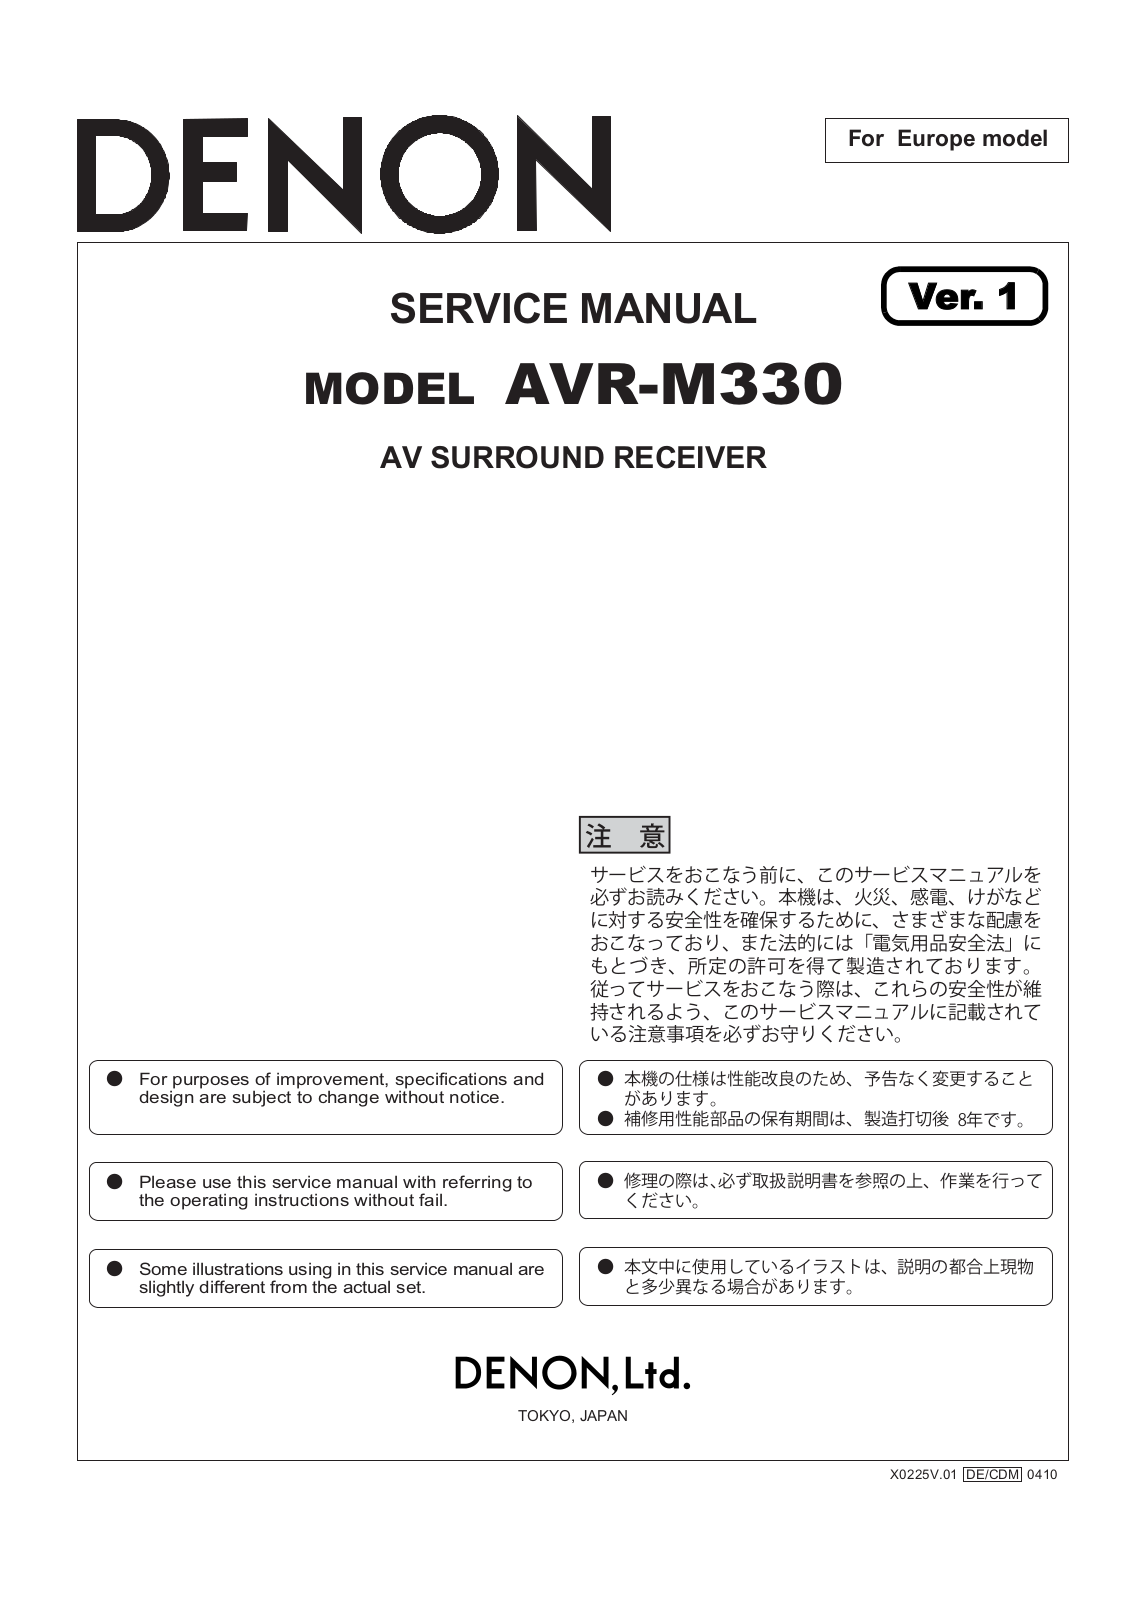 Denon AVR-M330 Service Manual